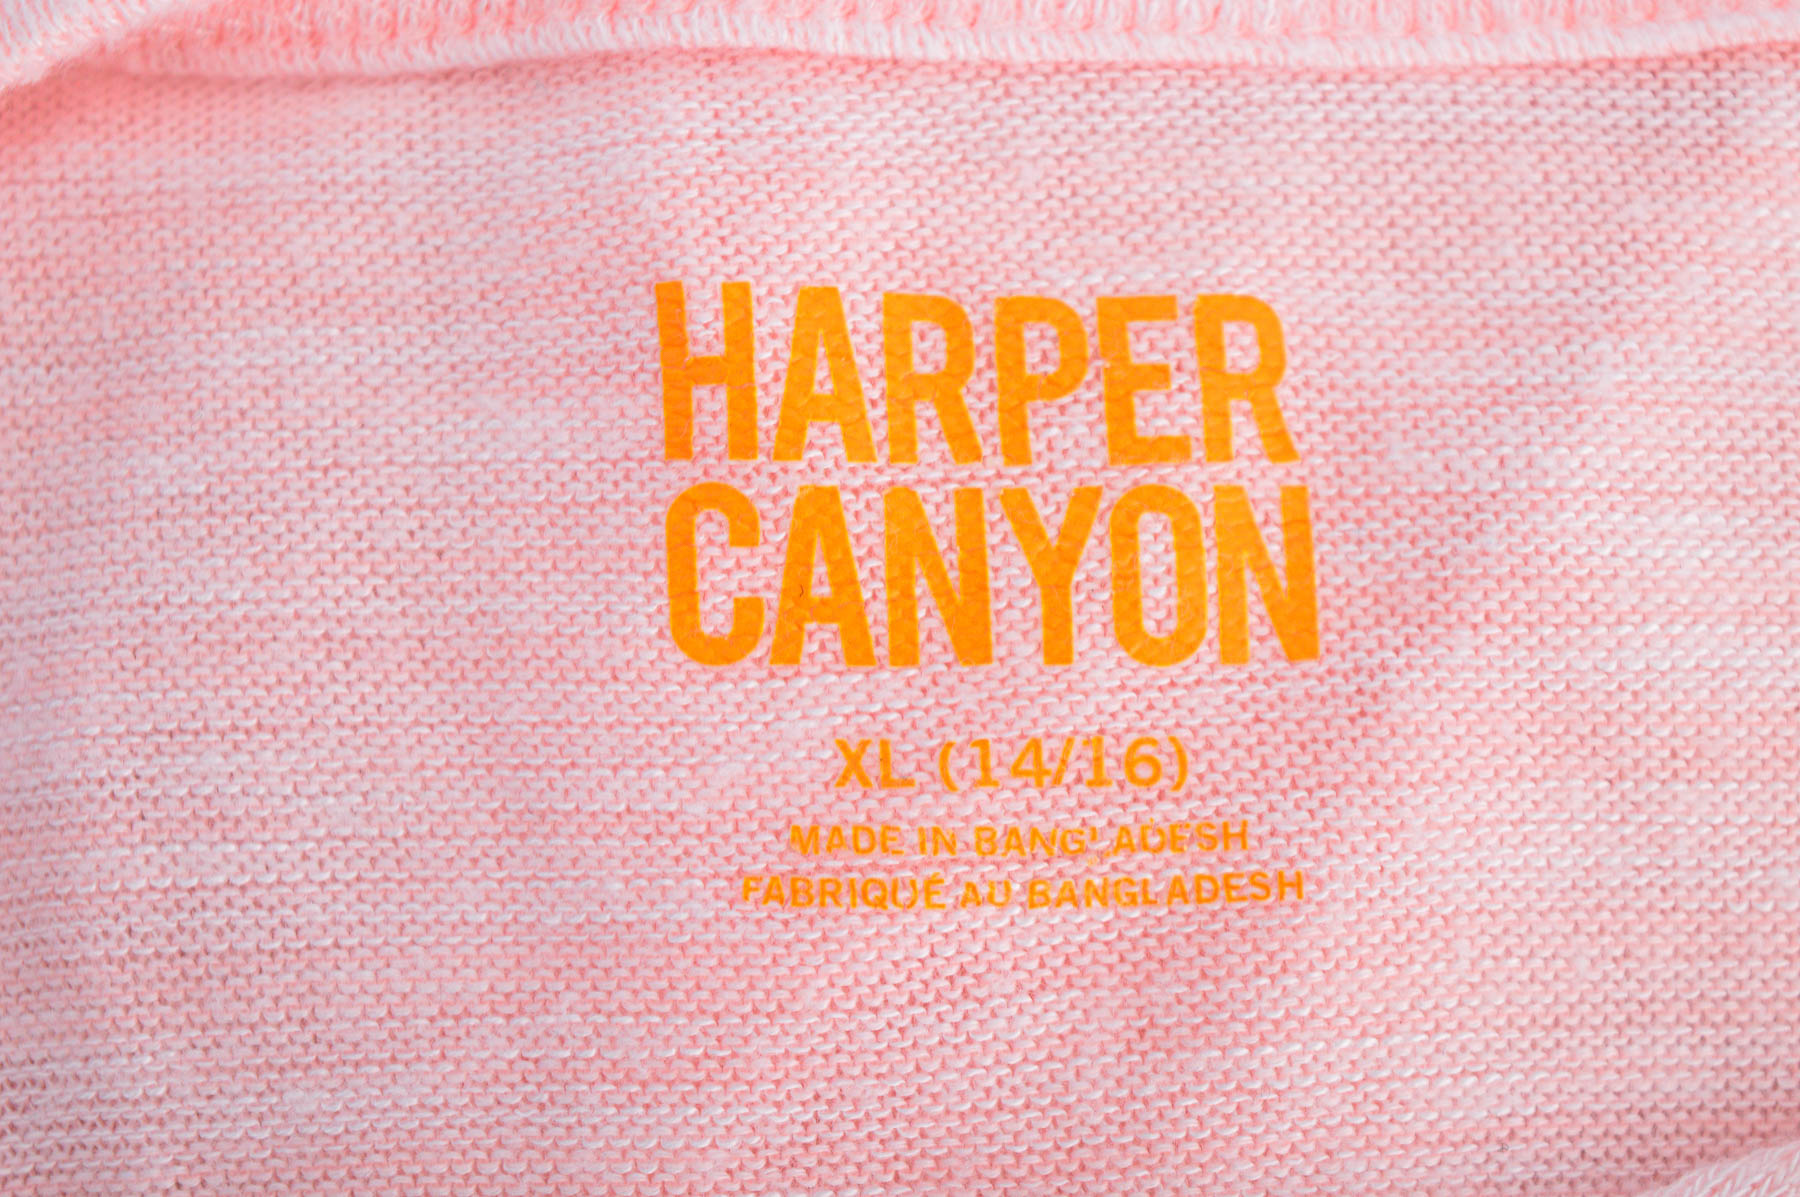 Pulover pentru fată - Harper Canyon - 2